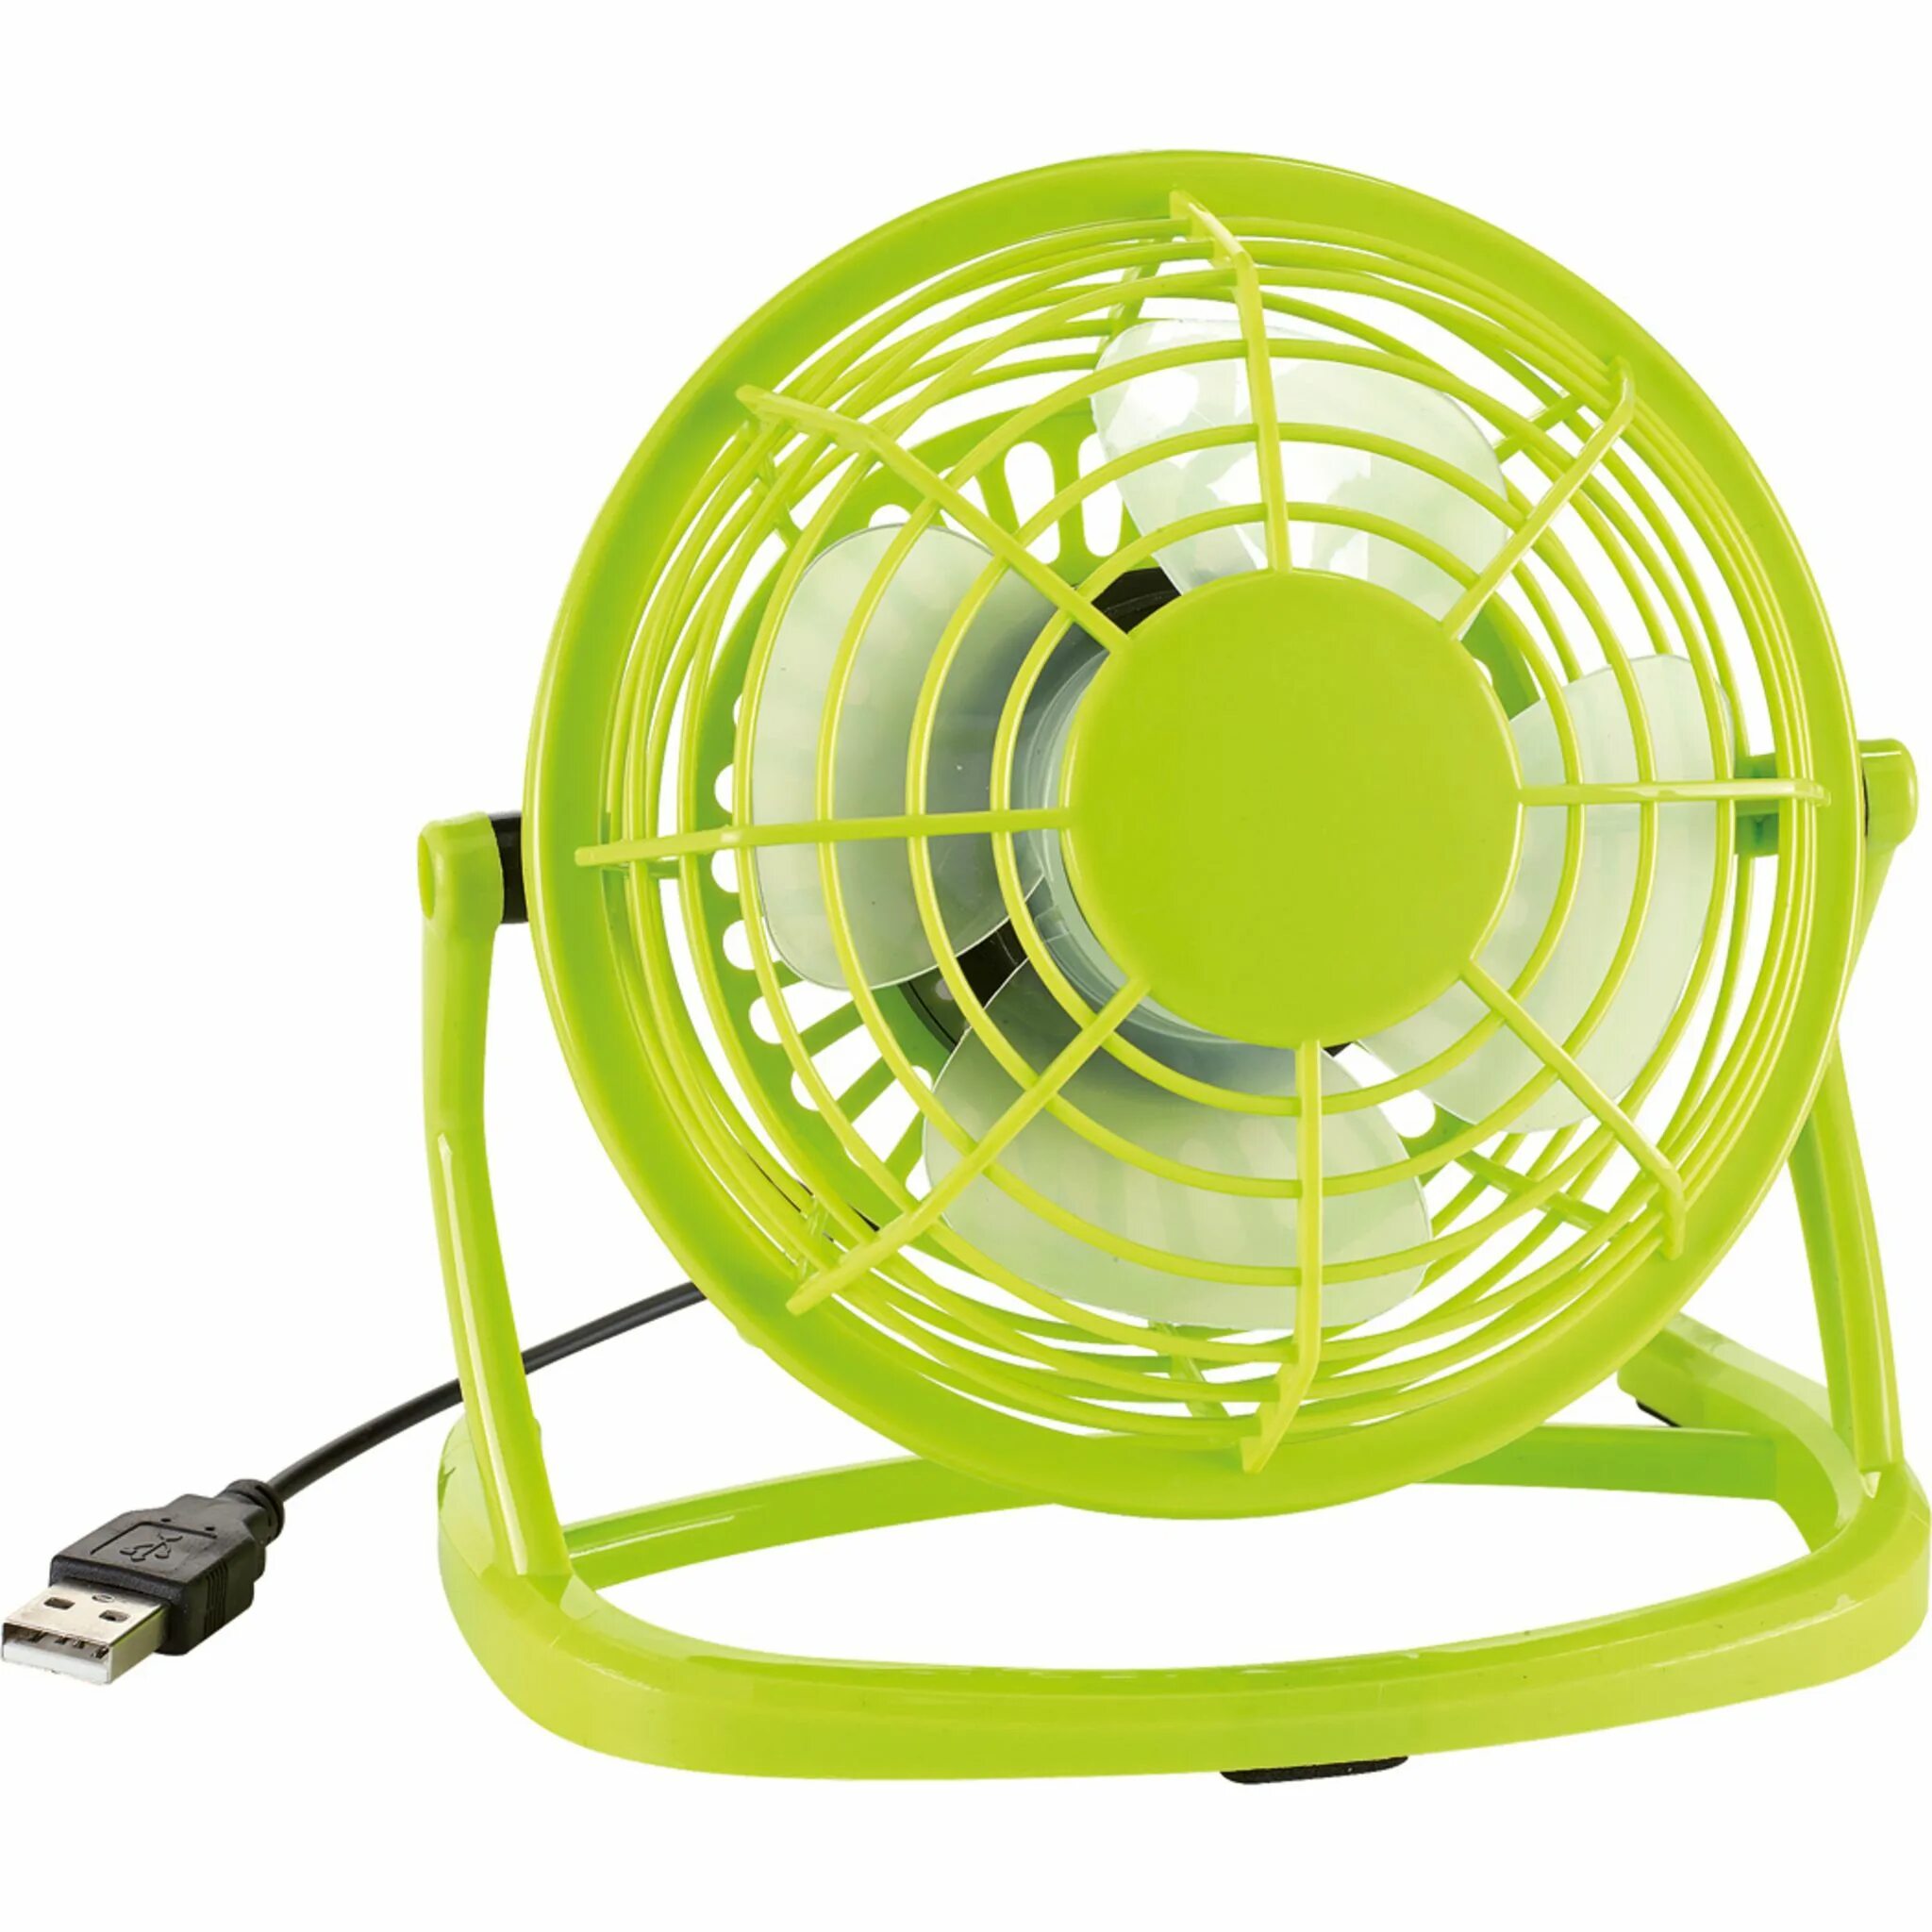 Fan n. Вентилятор юсб настольный. Вентилятор Dvok настольный зеленый. Настольный вентилятор от USB топ 2023 года. Мощный USB вентилятор.